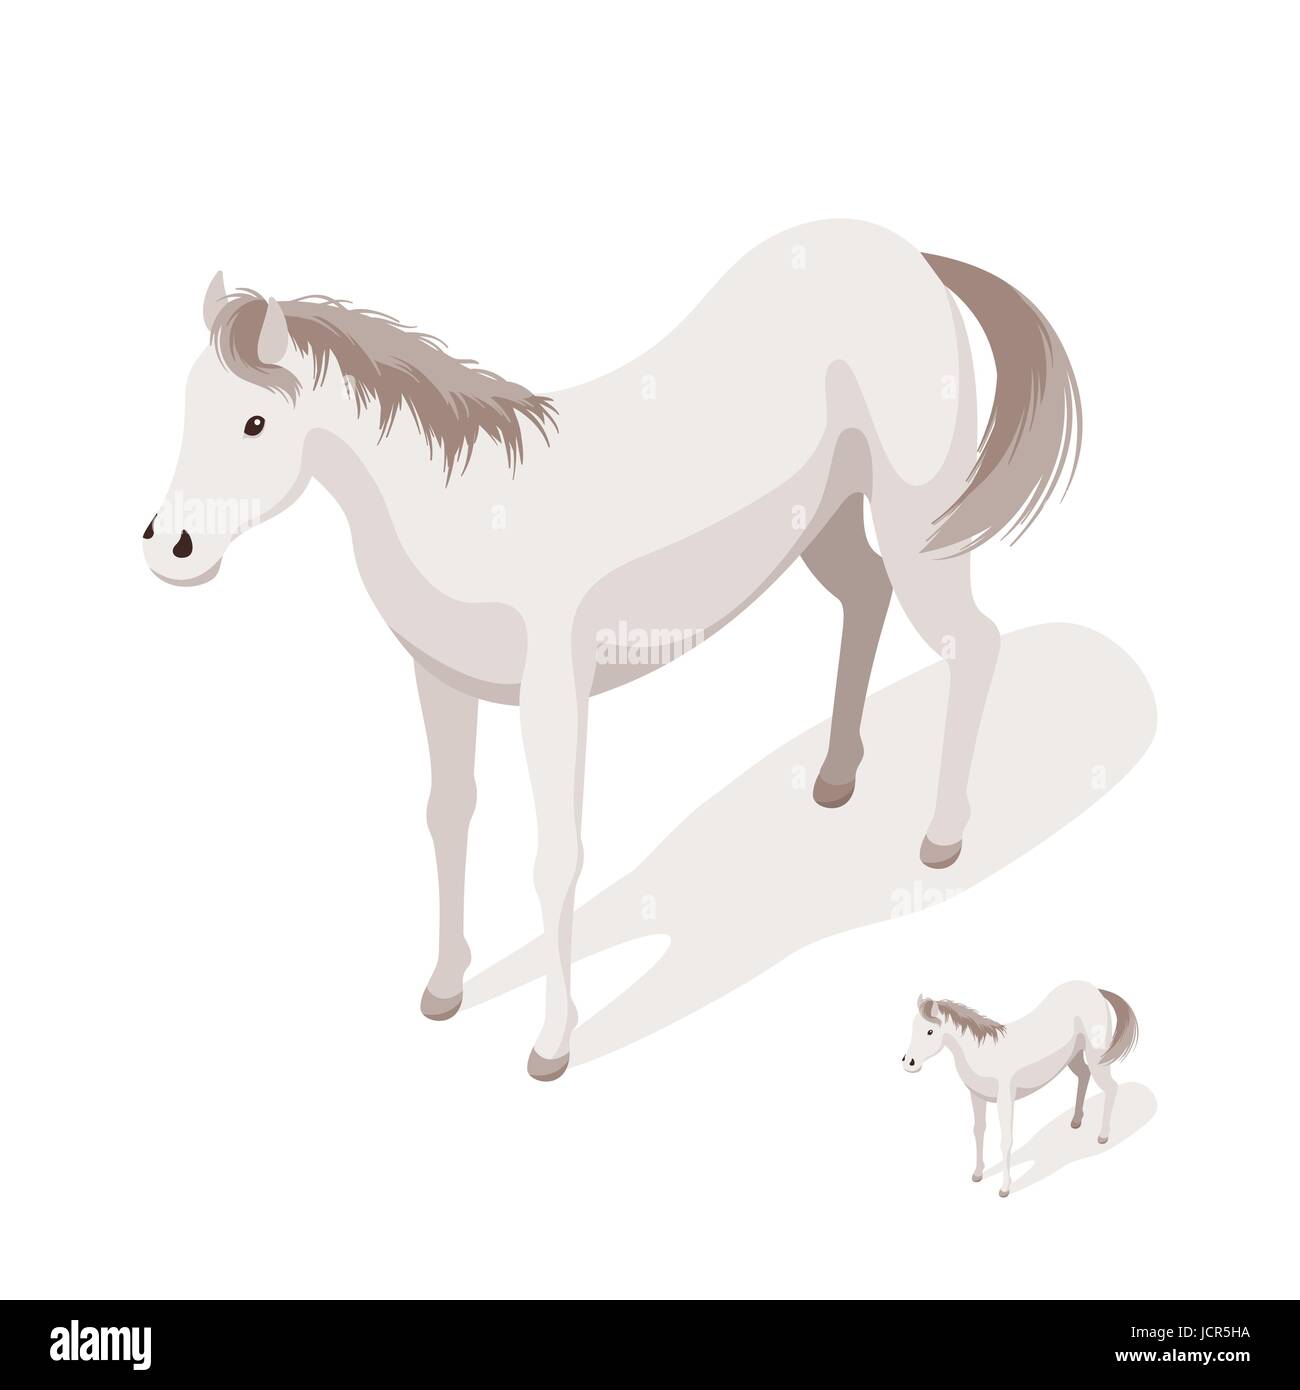 Isometrischen 3d Vektor-Illustration der großen und kleinen weißen Pferden. Symbol für das Web. Isoliert auf weißem Hintergrund. Stock Vektor